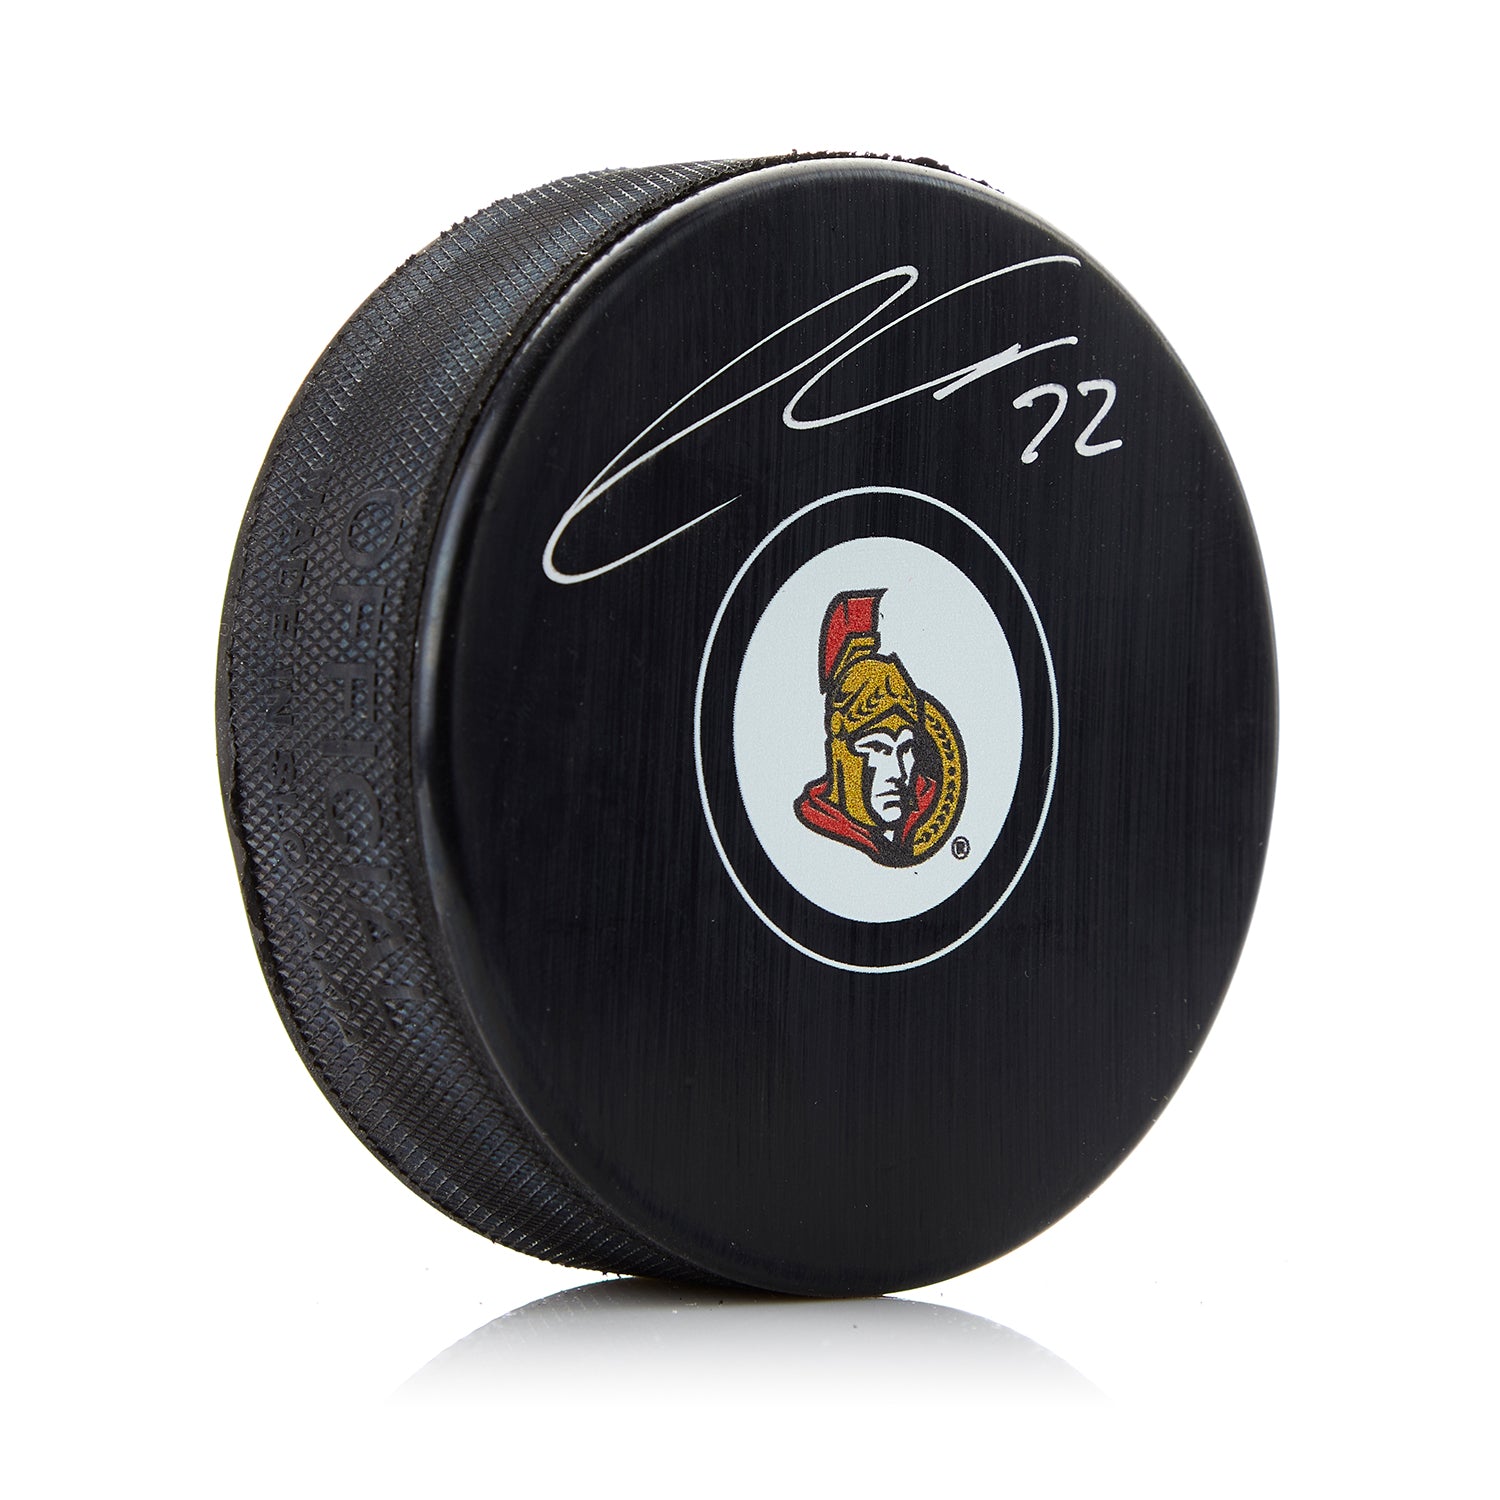 Thomas Chabot Ottawa Senators Autographed Hockey Puck